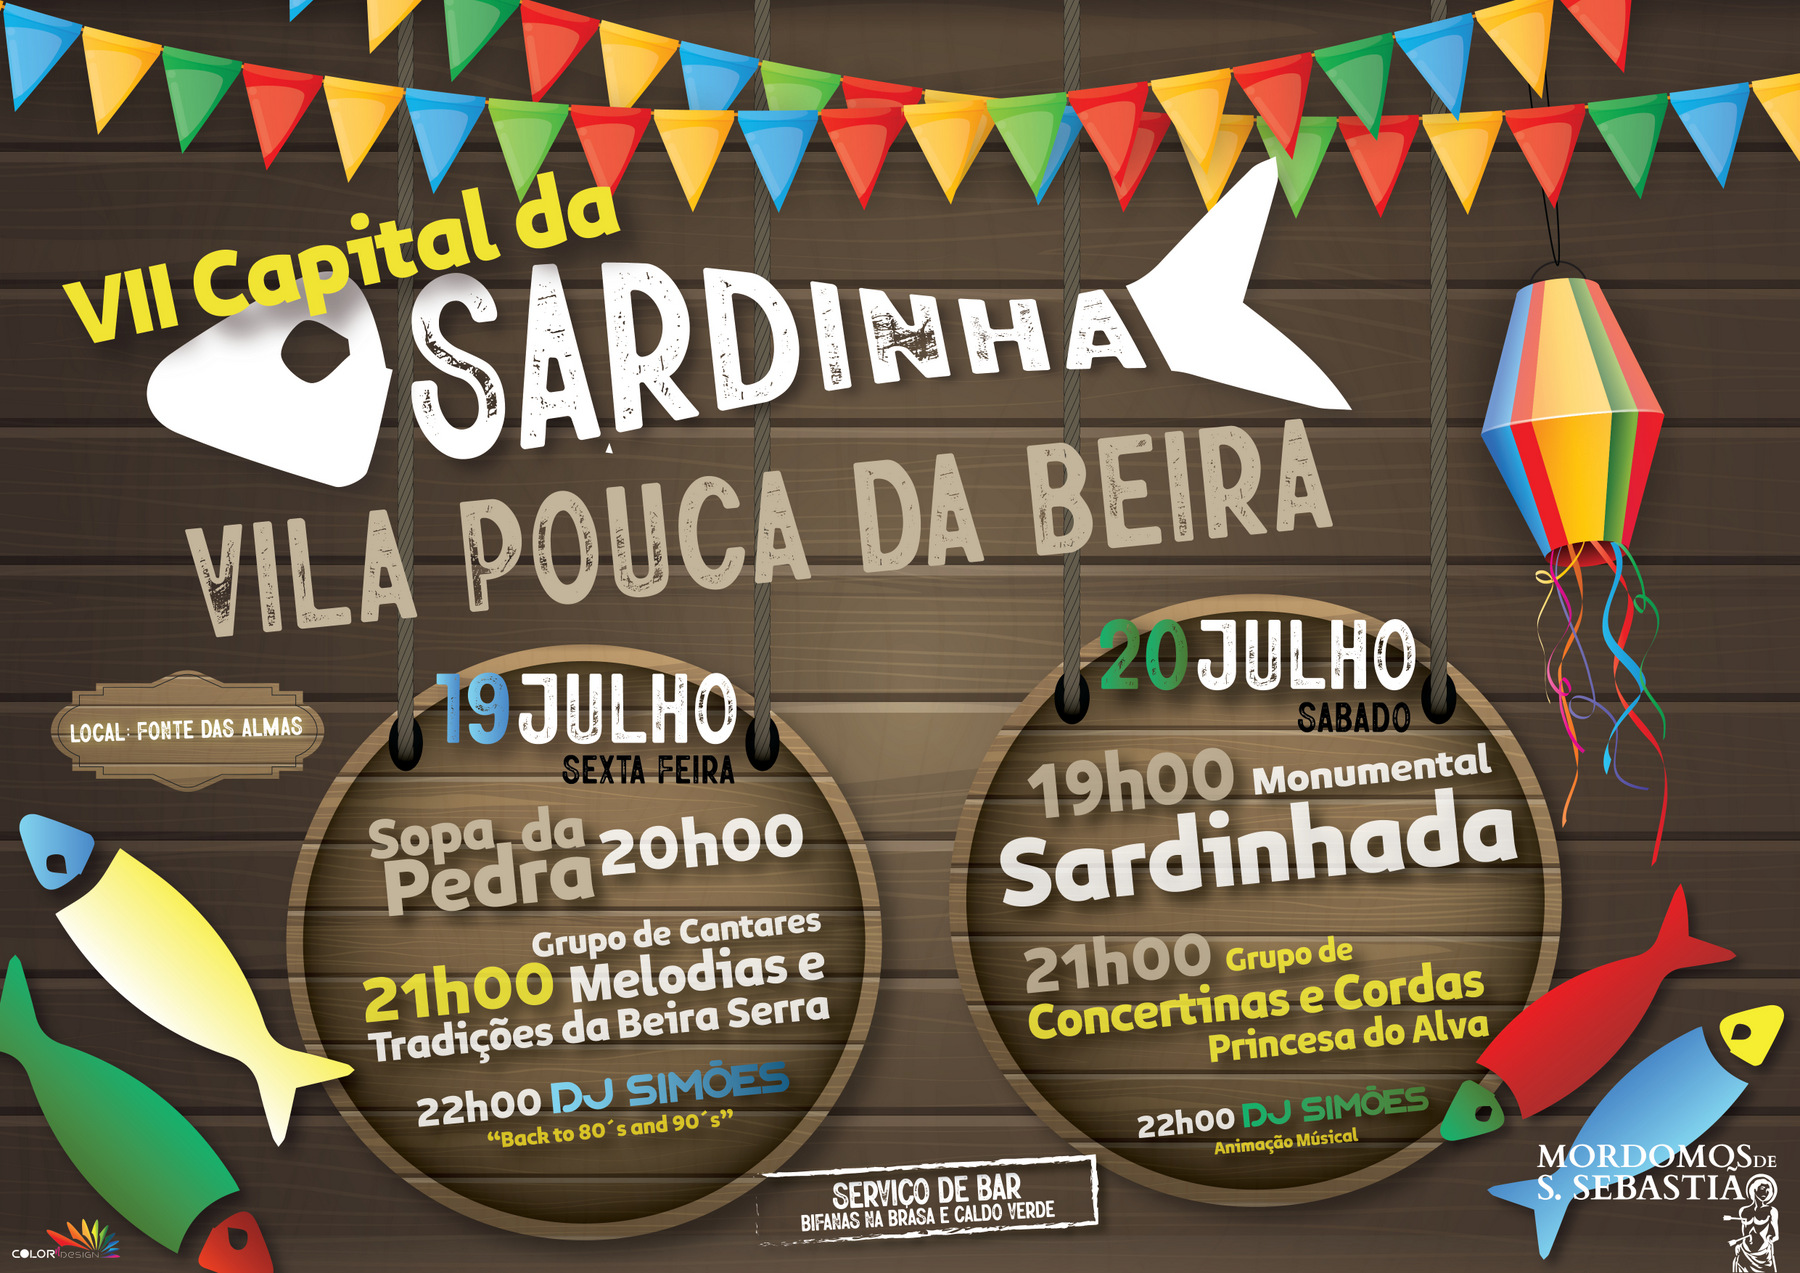 VII Capital da Sardinha - Vila Poua ca Beira